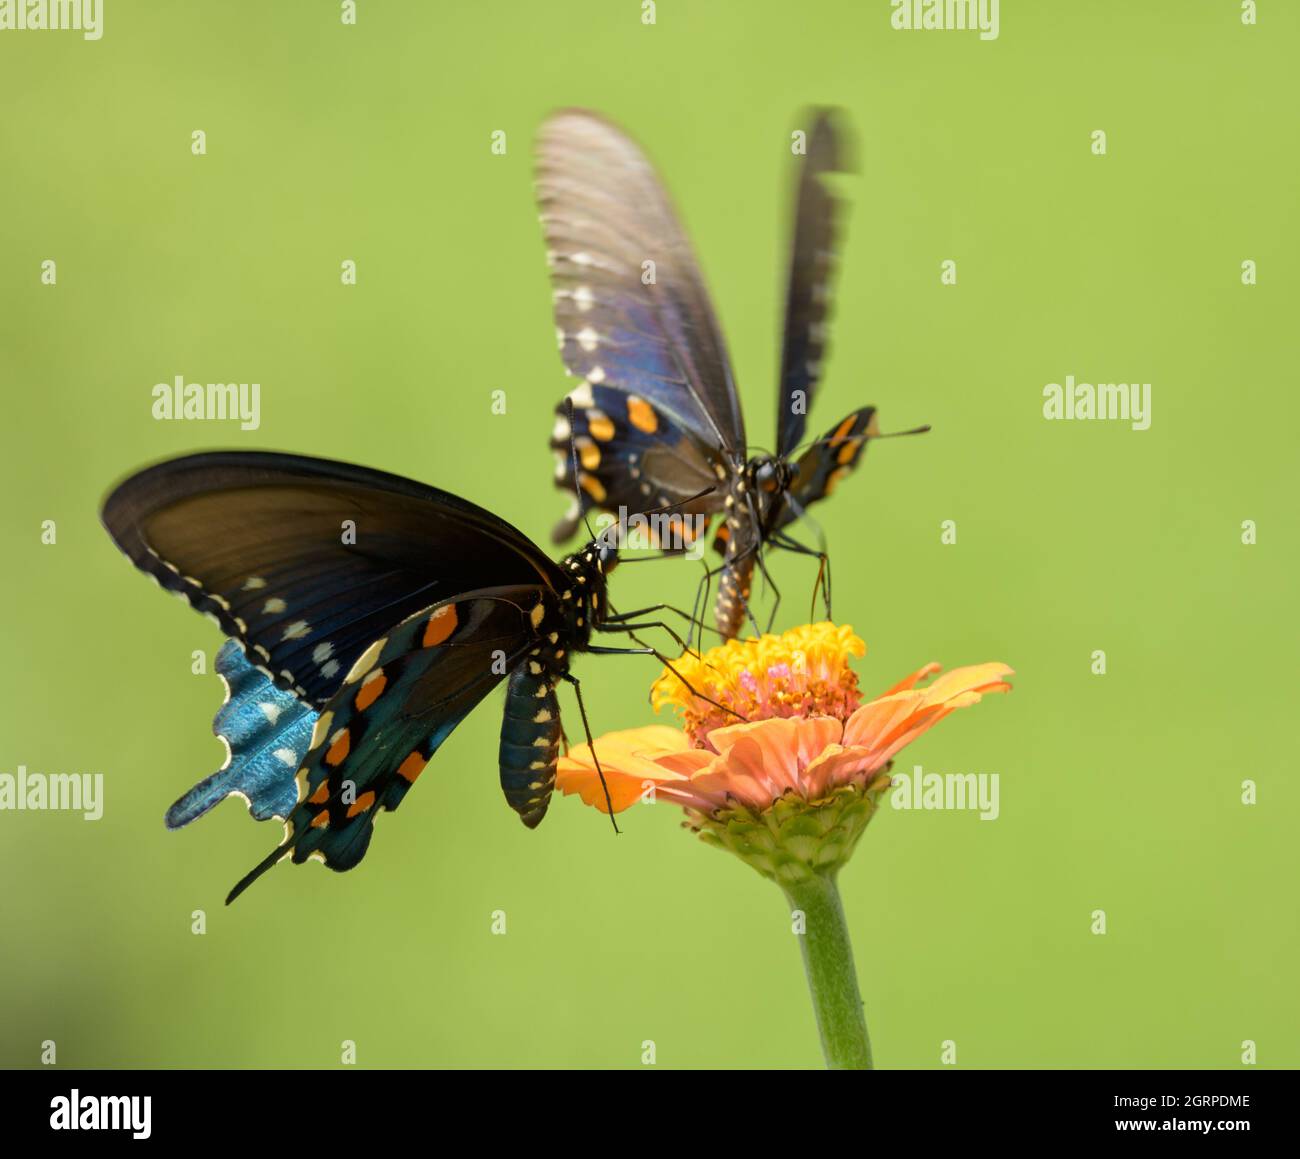 Pipevine Swallowtail papillon se nourrissant sur une fleur de Zinnia orange, avec un autre partageant la même fleur; sur fond vert Banque D'Images